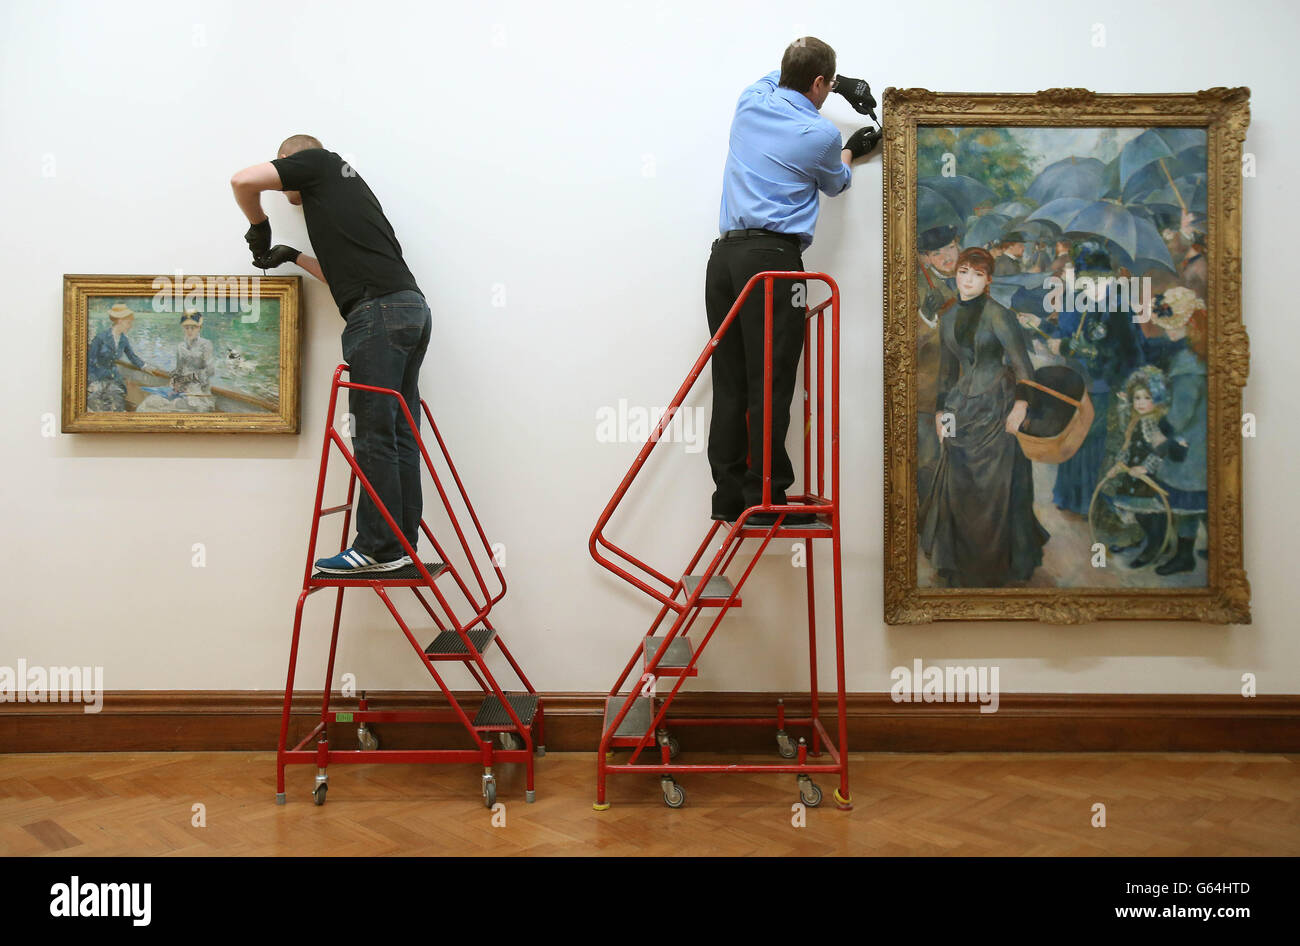 (Von links nach rechts) die Kunsthandler Dave McAsey und Peter Belling Hang Manets Jour d'Ete (Summers Day) Left und Renoirs 'Les Parapluies' (die Regenschirme), während vier impressionistische Gemälde von der National Gallery London an die Hugh Lane Gallery, Dublin, zurückgegeben werden. Stockfoto